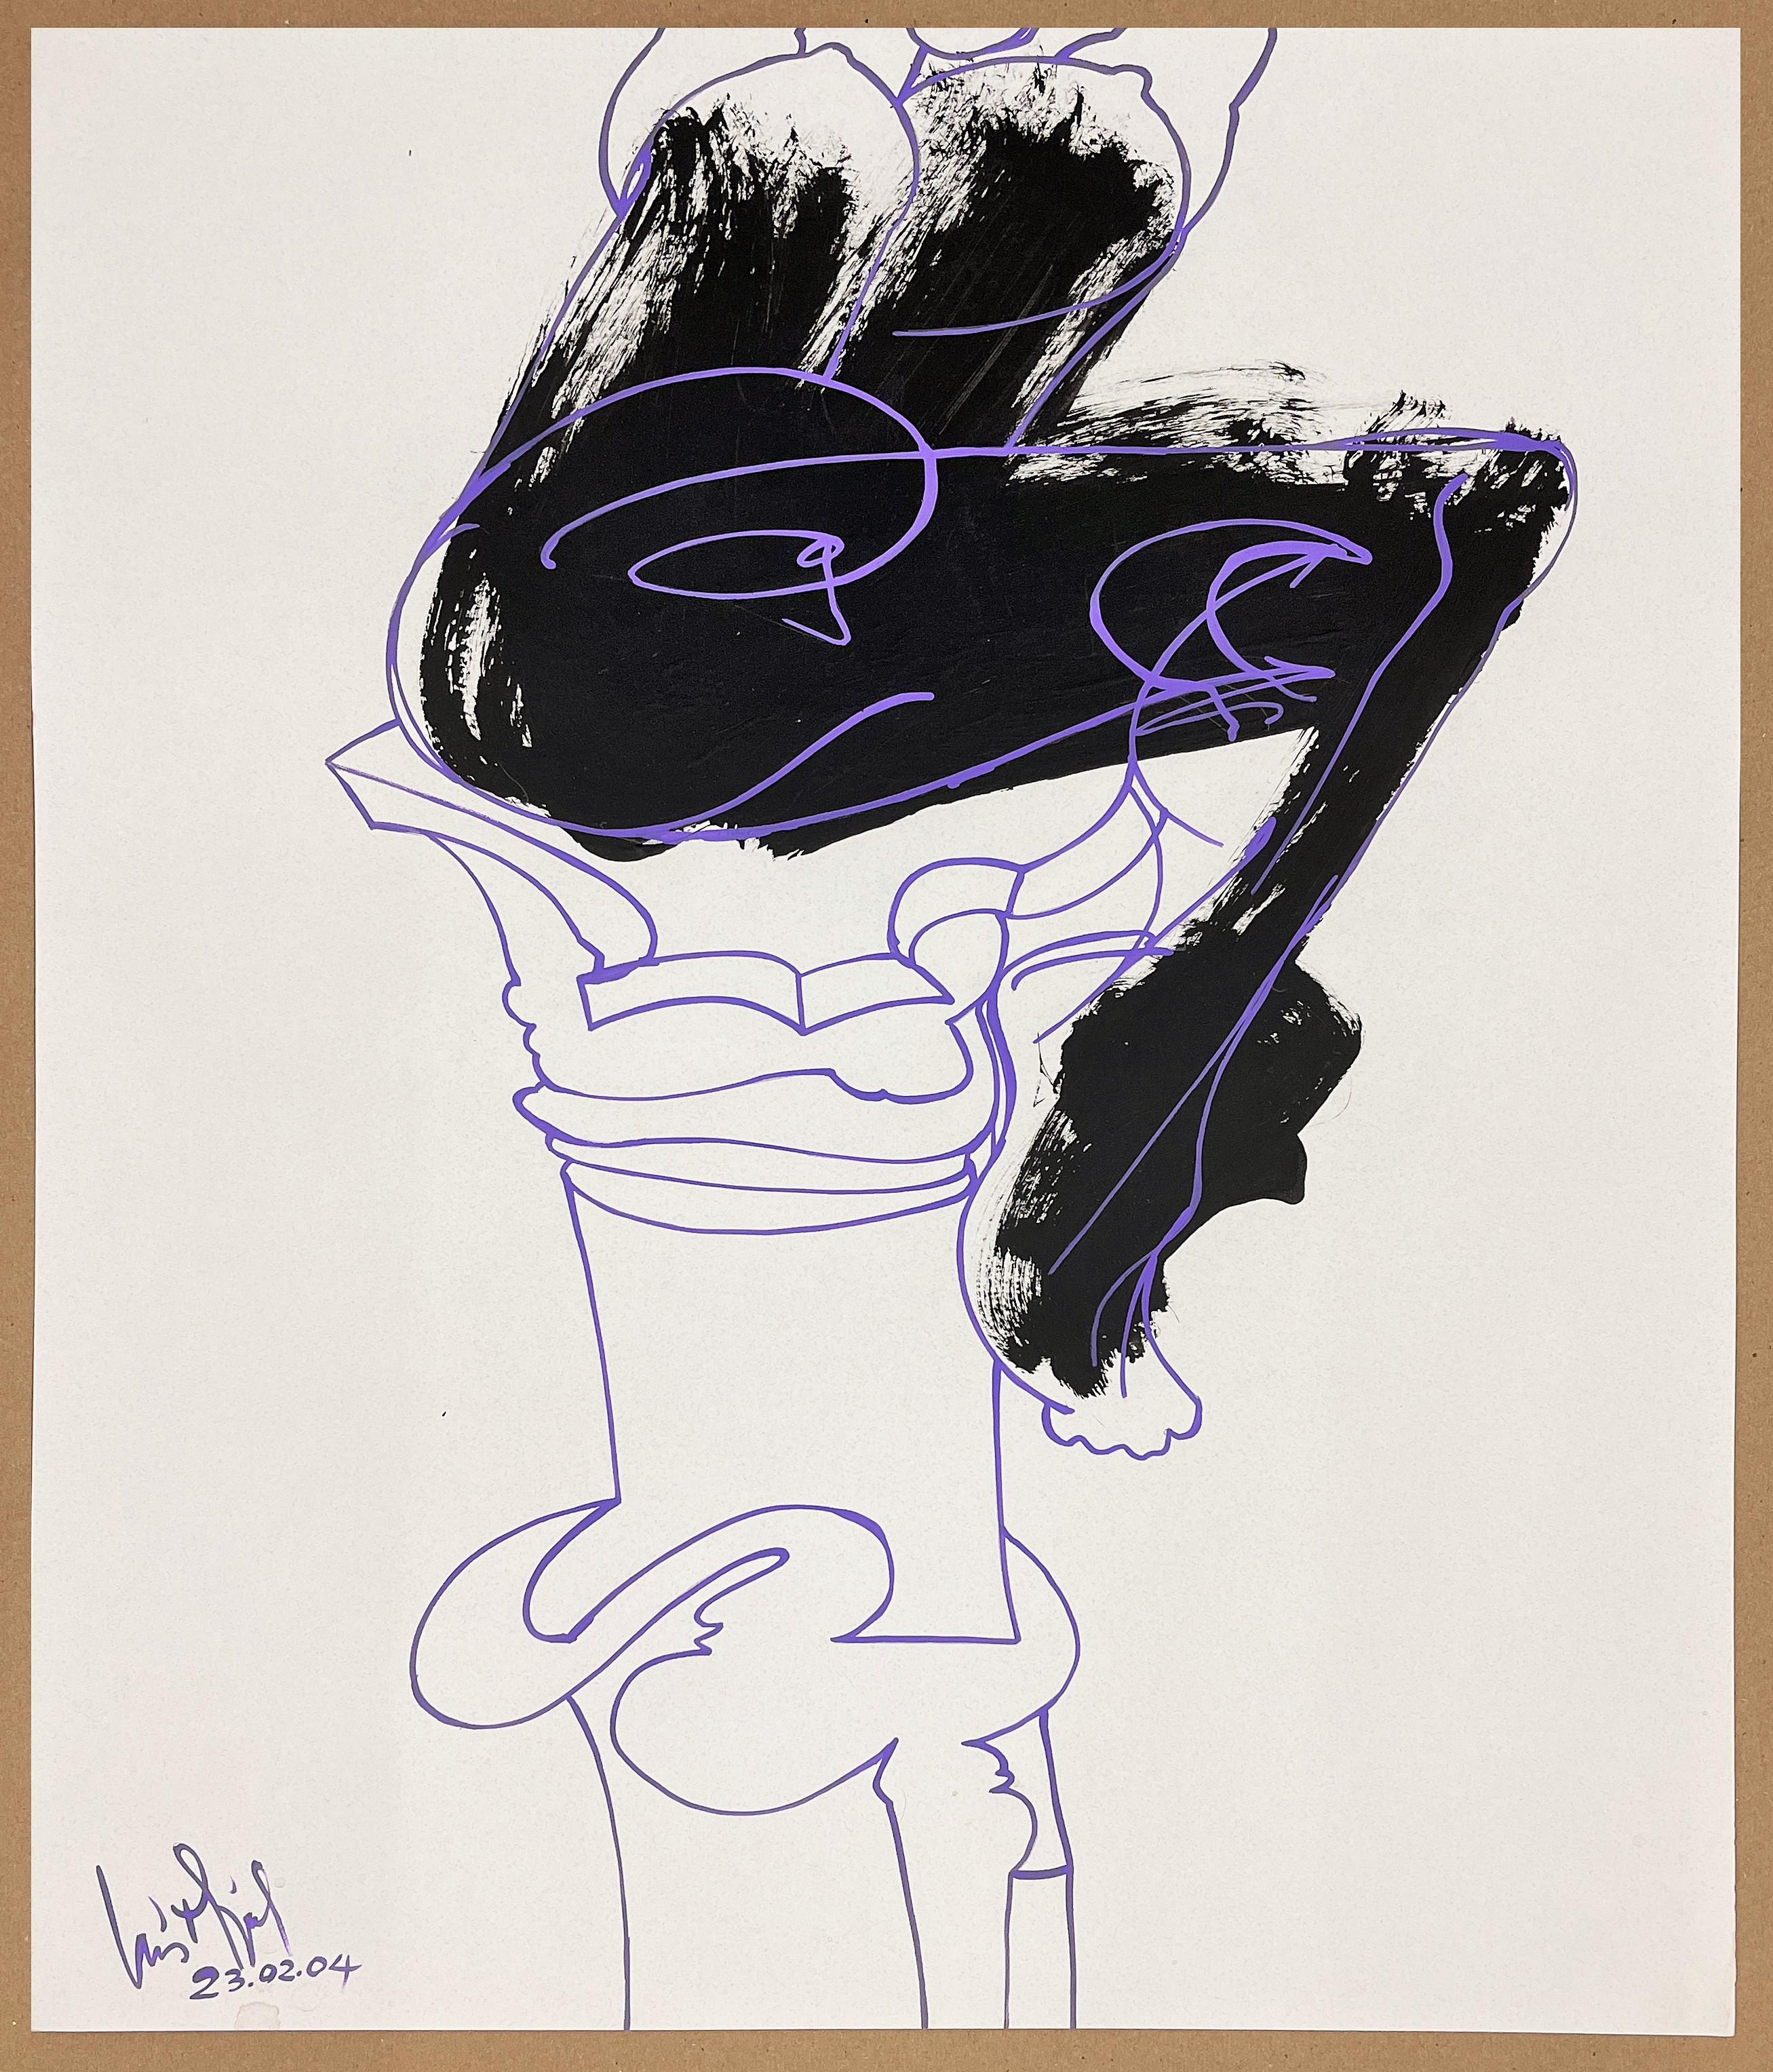 Luis Miguel Valdes, ¨Sillas 3¨, 2004, Work on paper, 22.4x18.7 in - Art by Luis Miguel Valdes 